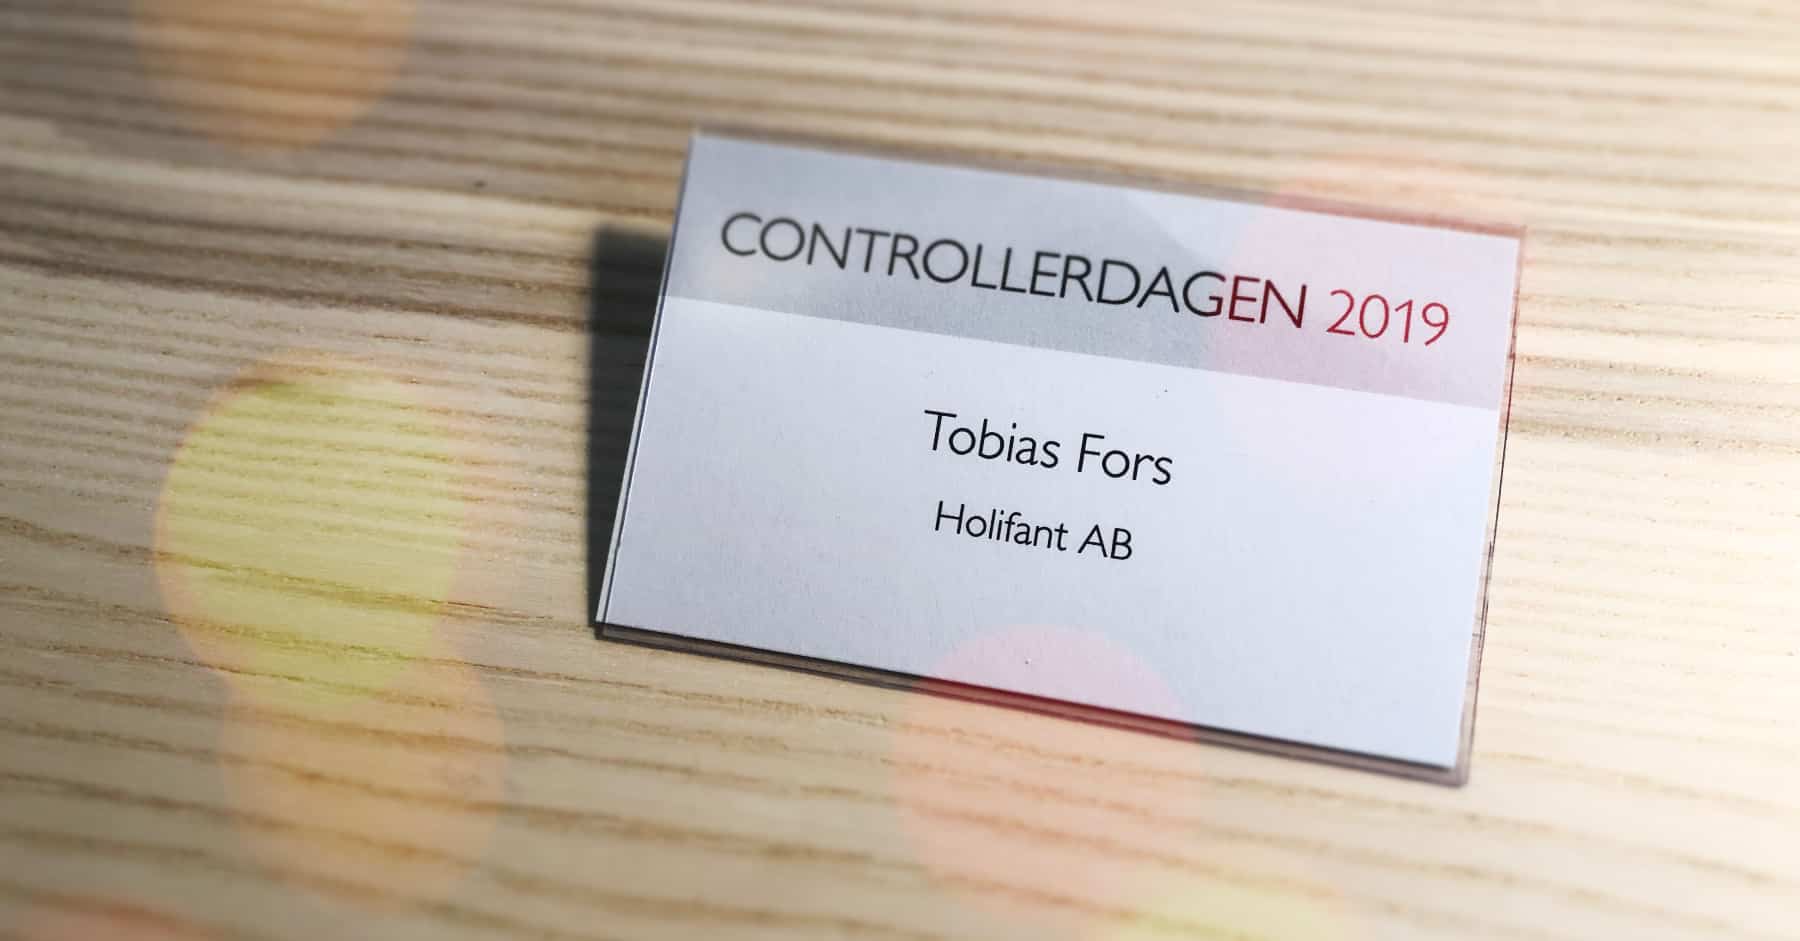 Tobias Fors namnskylt från Controllerdagen 2019 i Uppsala